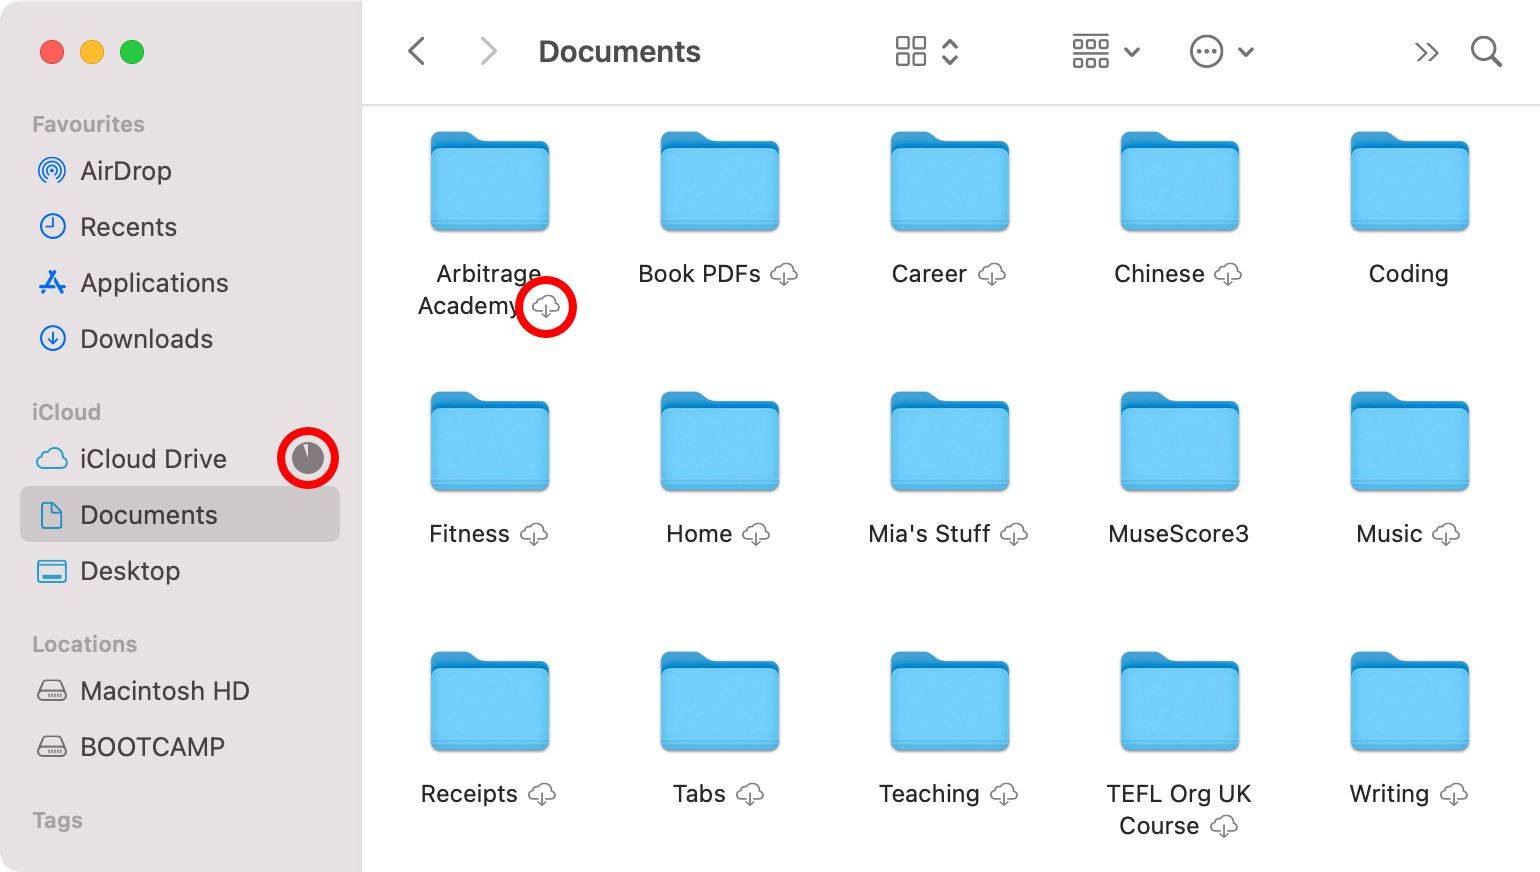 iCloud Drive download icon and loading circle in Finder - Come sincronizzare il desktop del Mac e la cartella dei documenti su iCloud